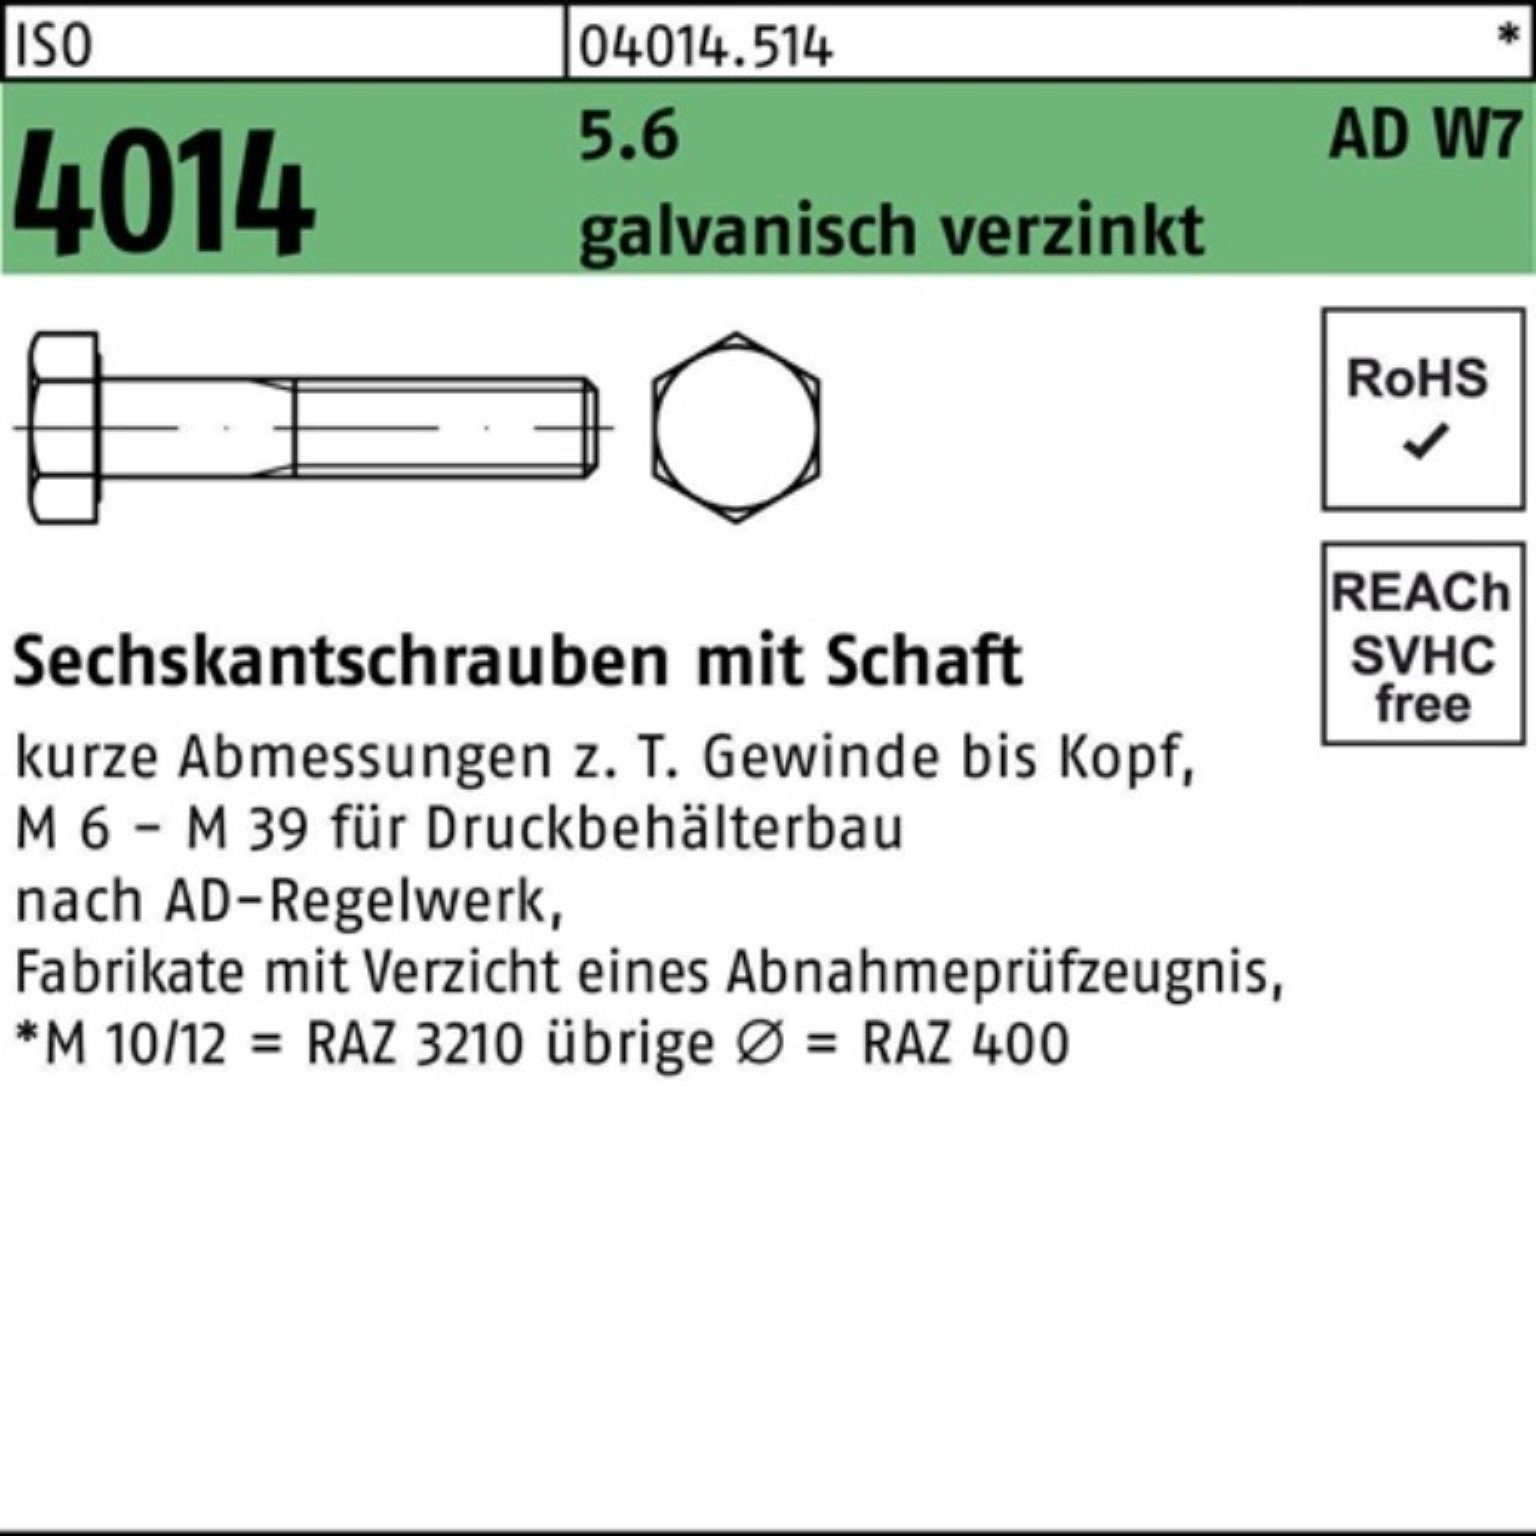 M33x Pack Schaft Sechskantschraube 180 4014 100er 5.6 galv.verz Bufab Sechskantschraube ISO W7